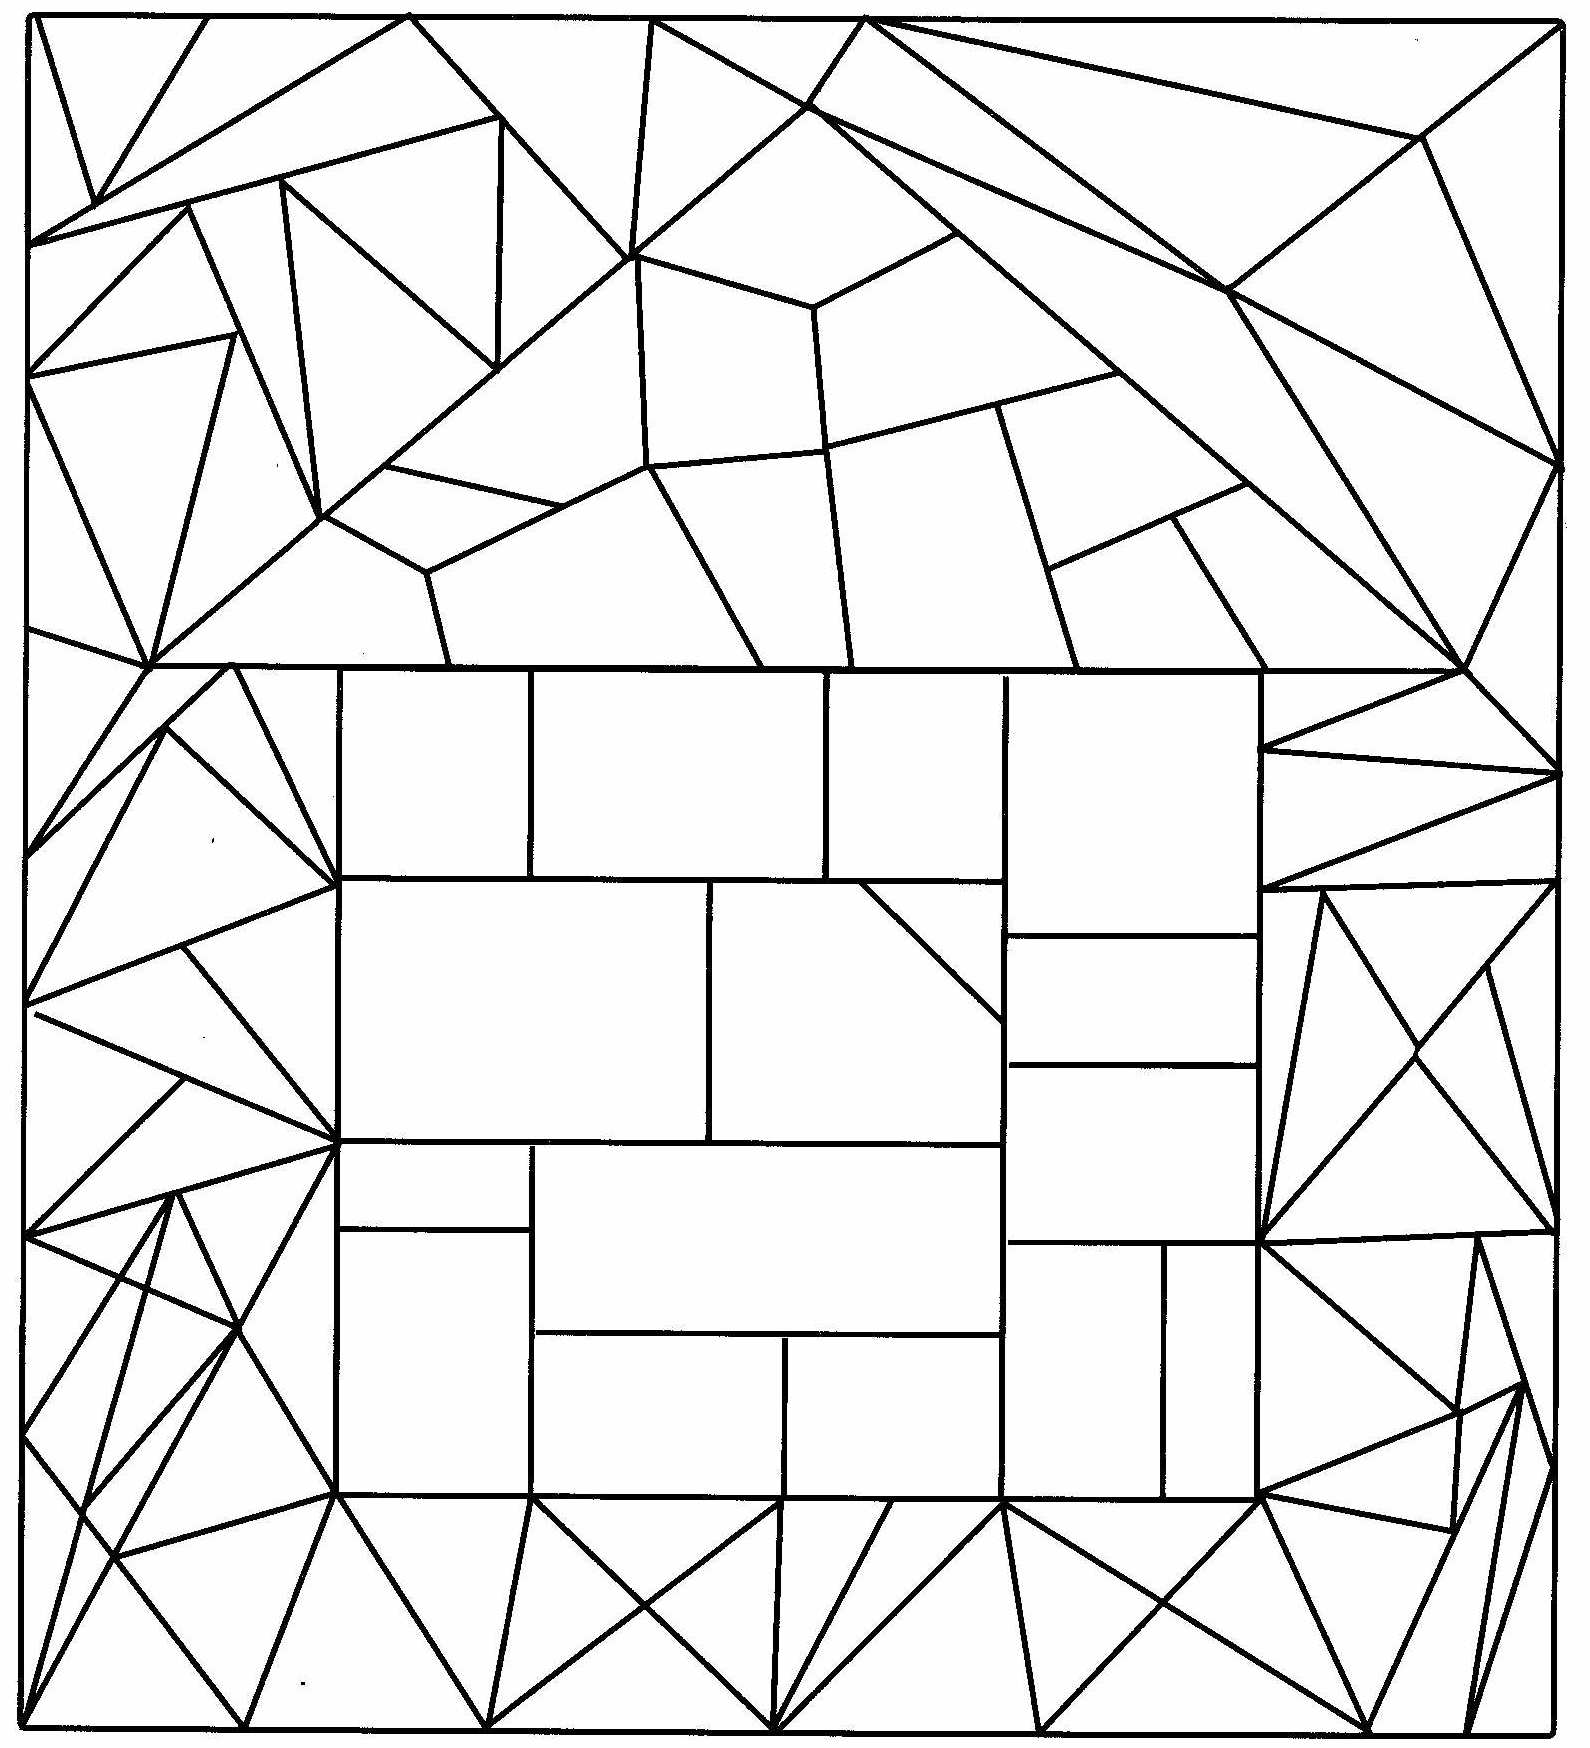 Раскрашивание задачи. Задания по геометрическим фигурам. Фигуры задания для детей. Раскрась все треугольники. Геометрия задания для дошкольников.